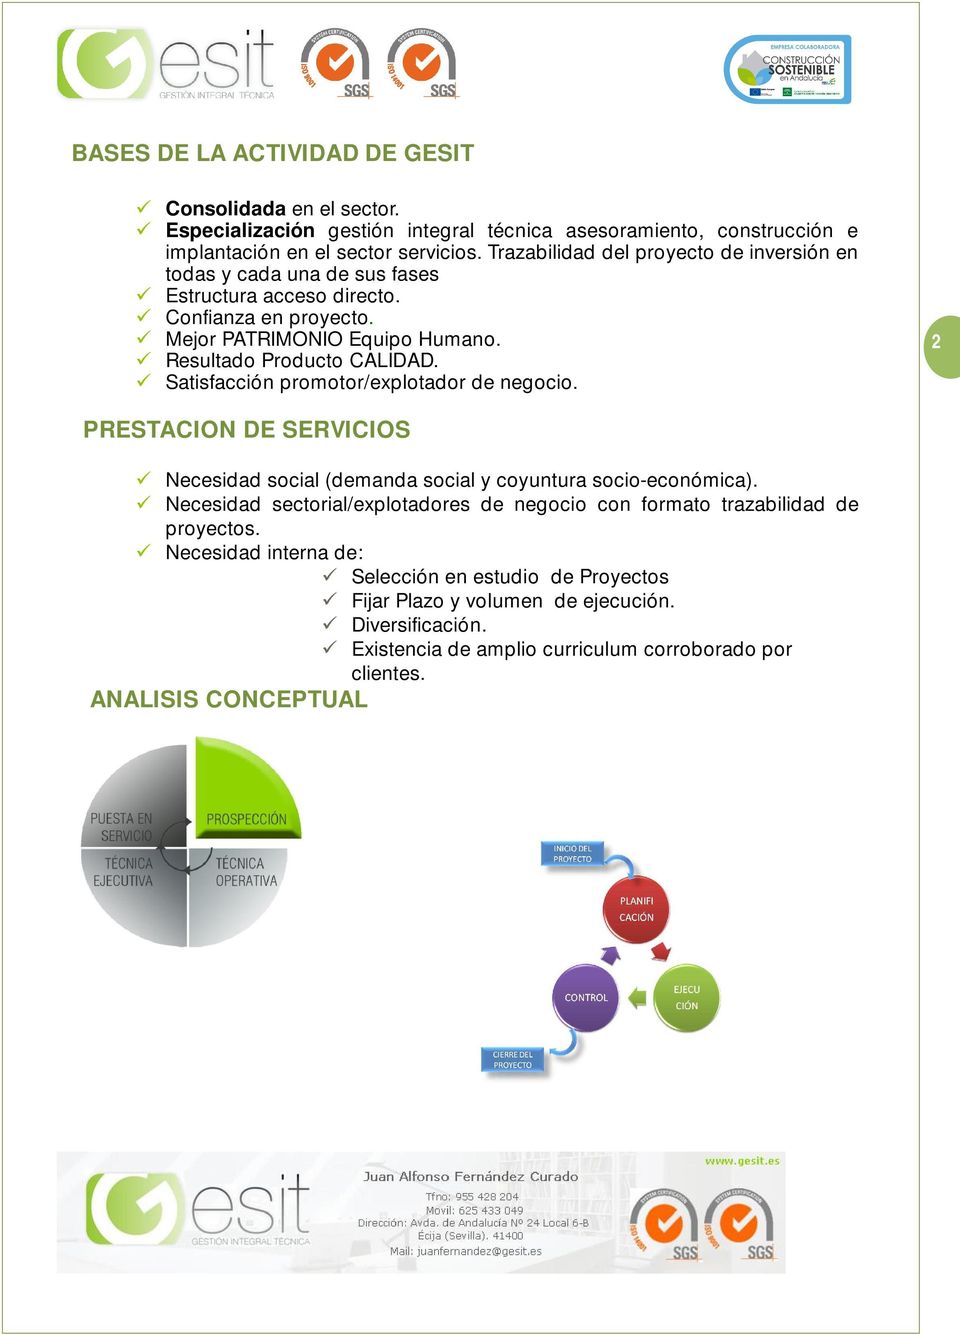 Satisfacción promotor/explotador de negocio. 2 PRESTACION DE SERVICIOS Necesidad social (demanda social y coyuntura socio-económica).